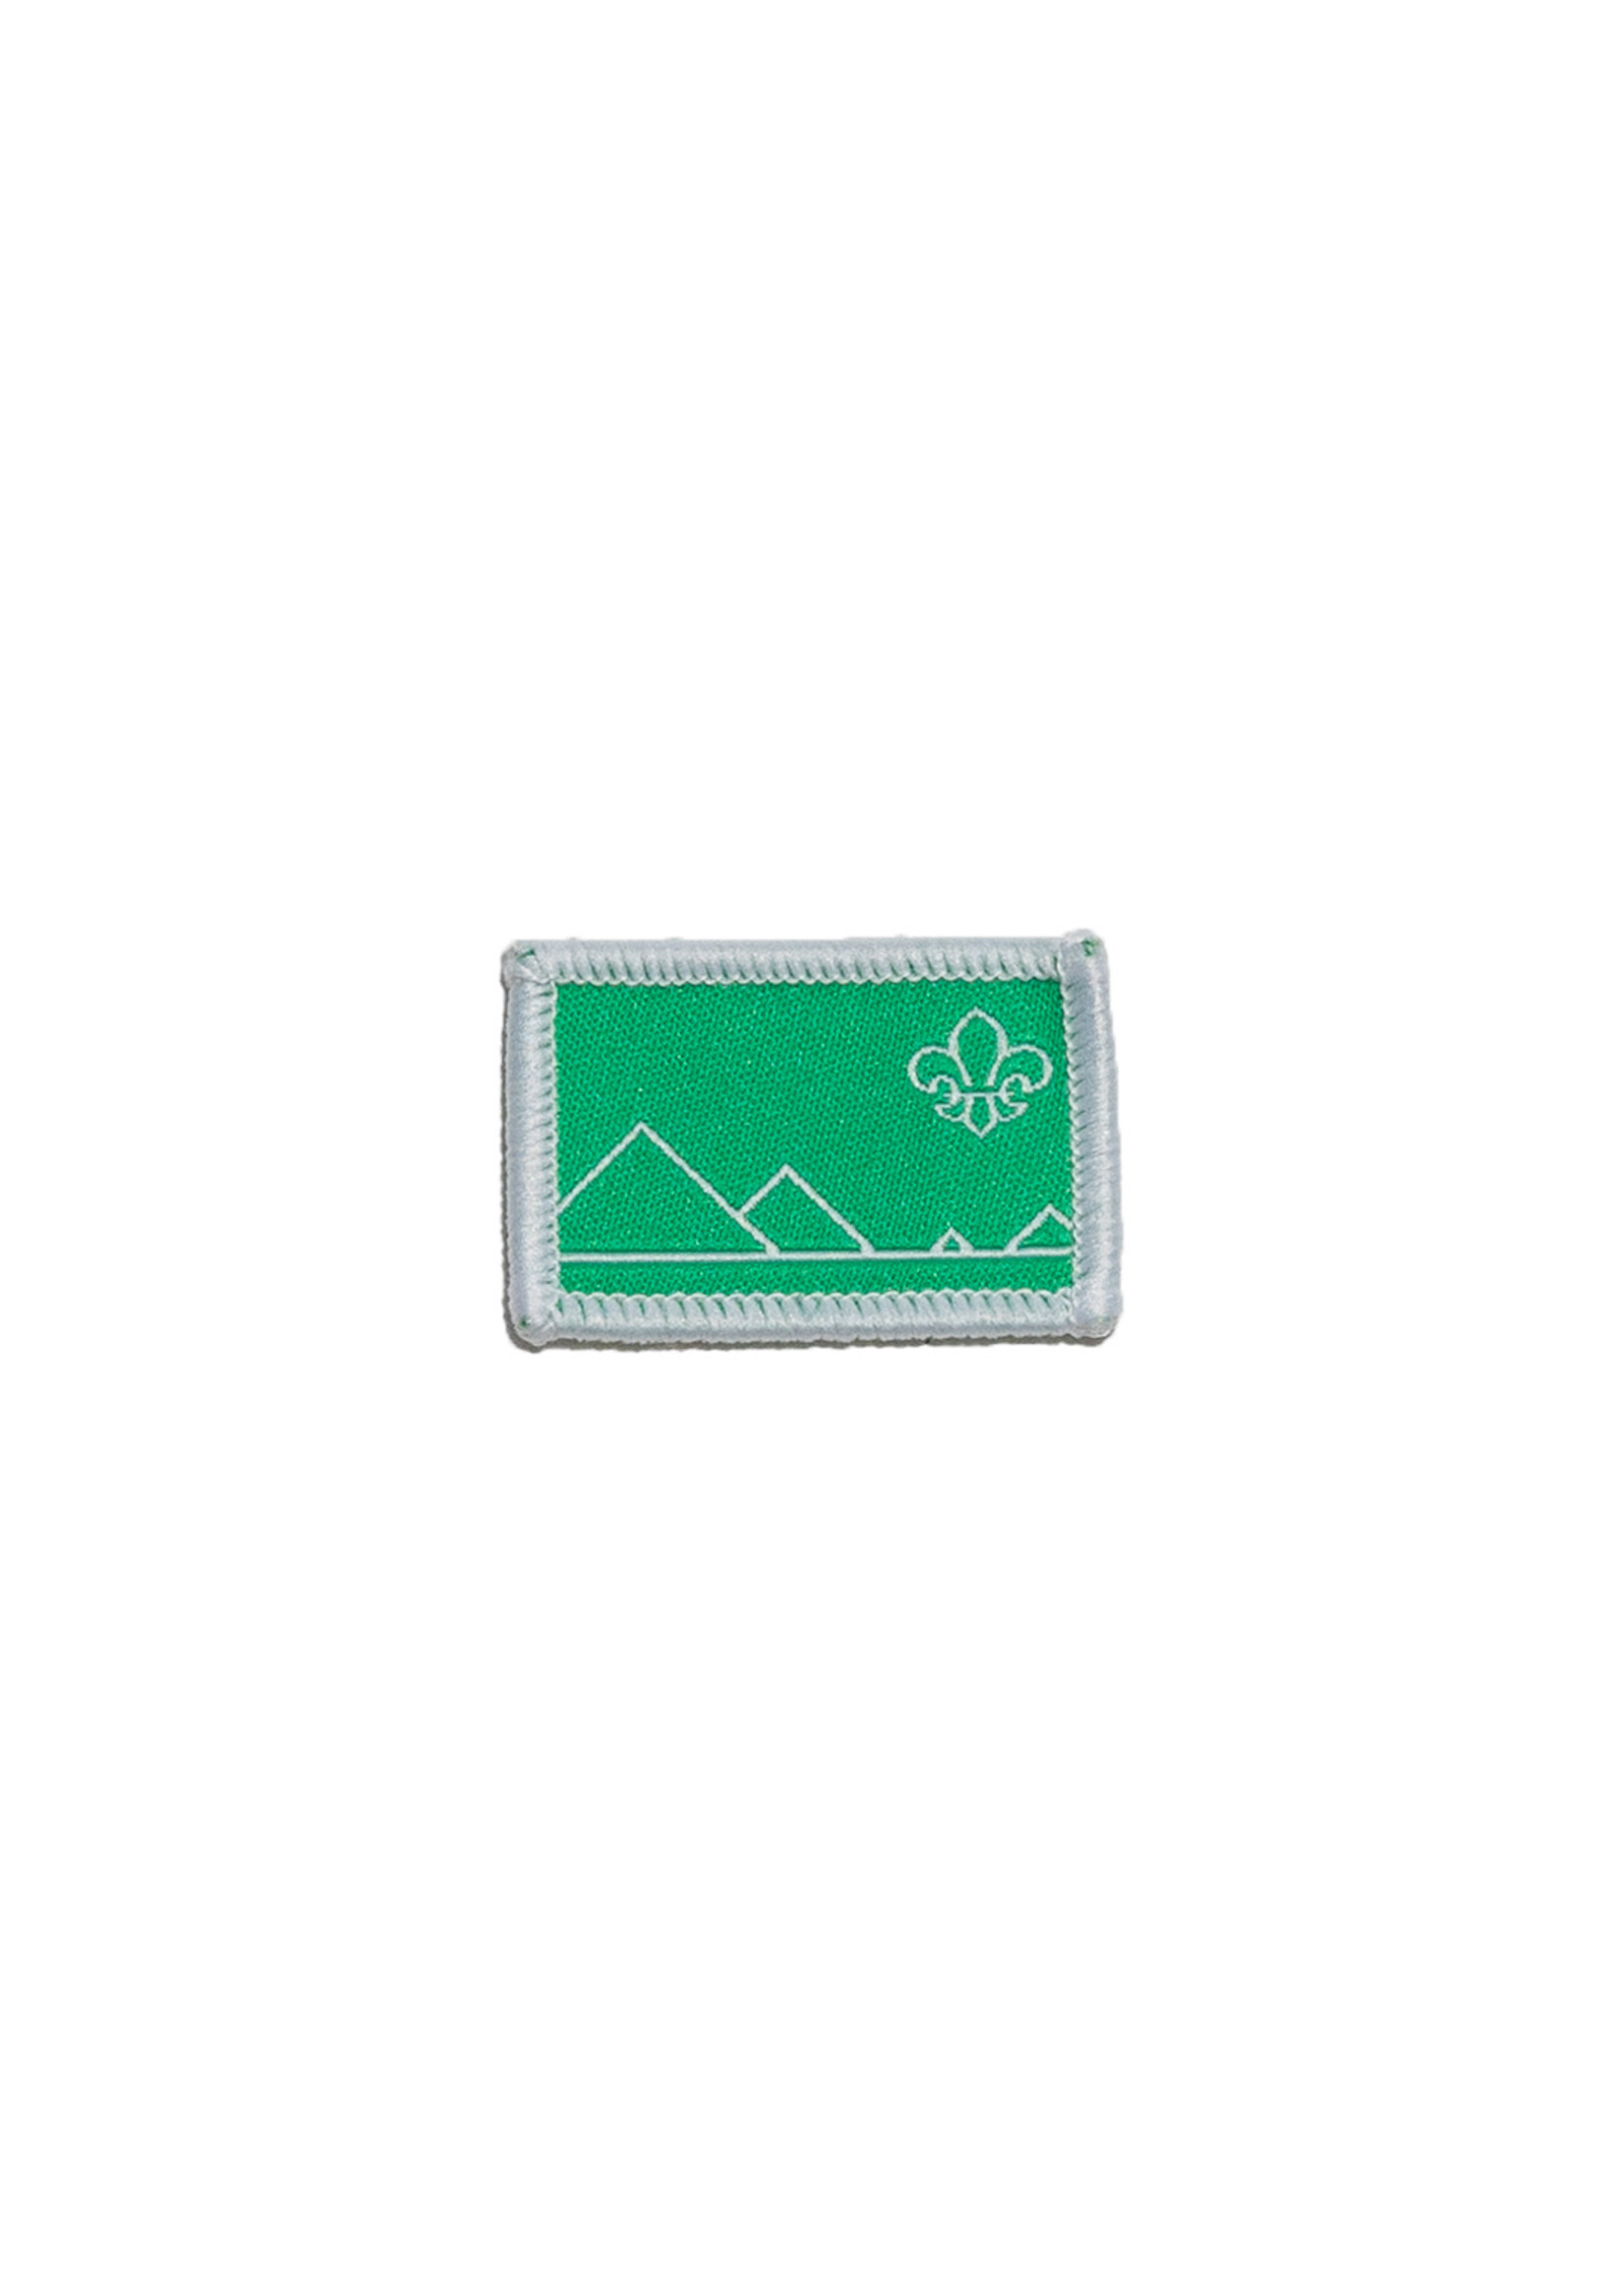 Unit Management Badge - Scout